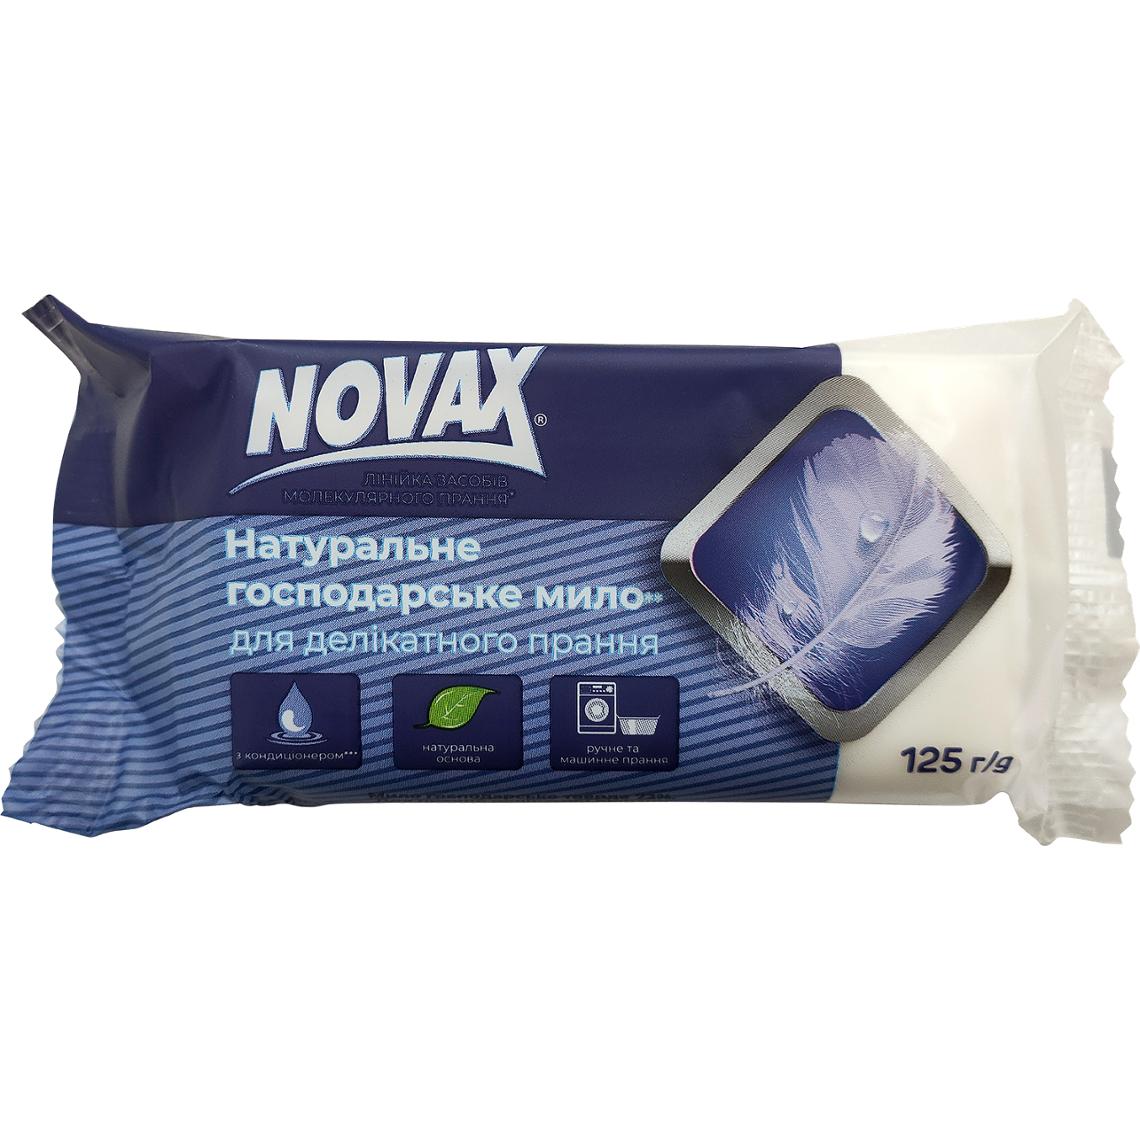 Мыло хозяйственное Novax натуральное для деликатной стирки 125 г - фото 1